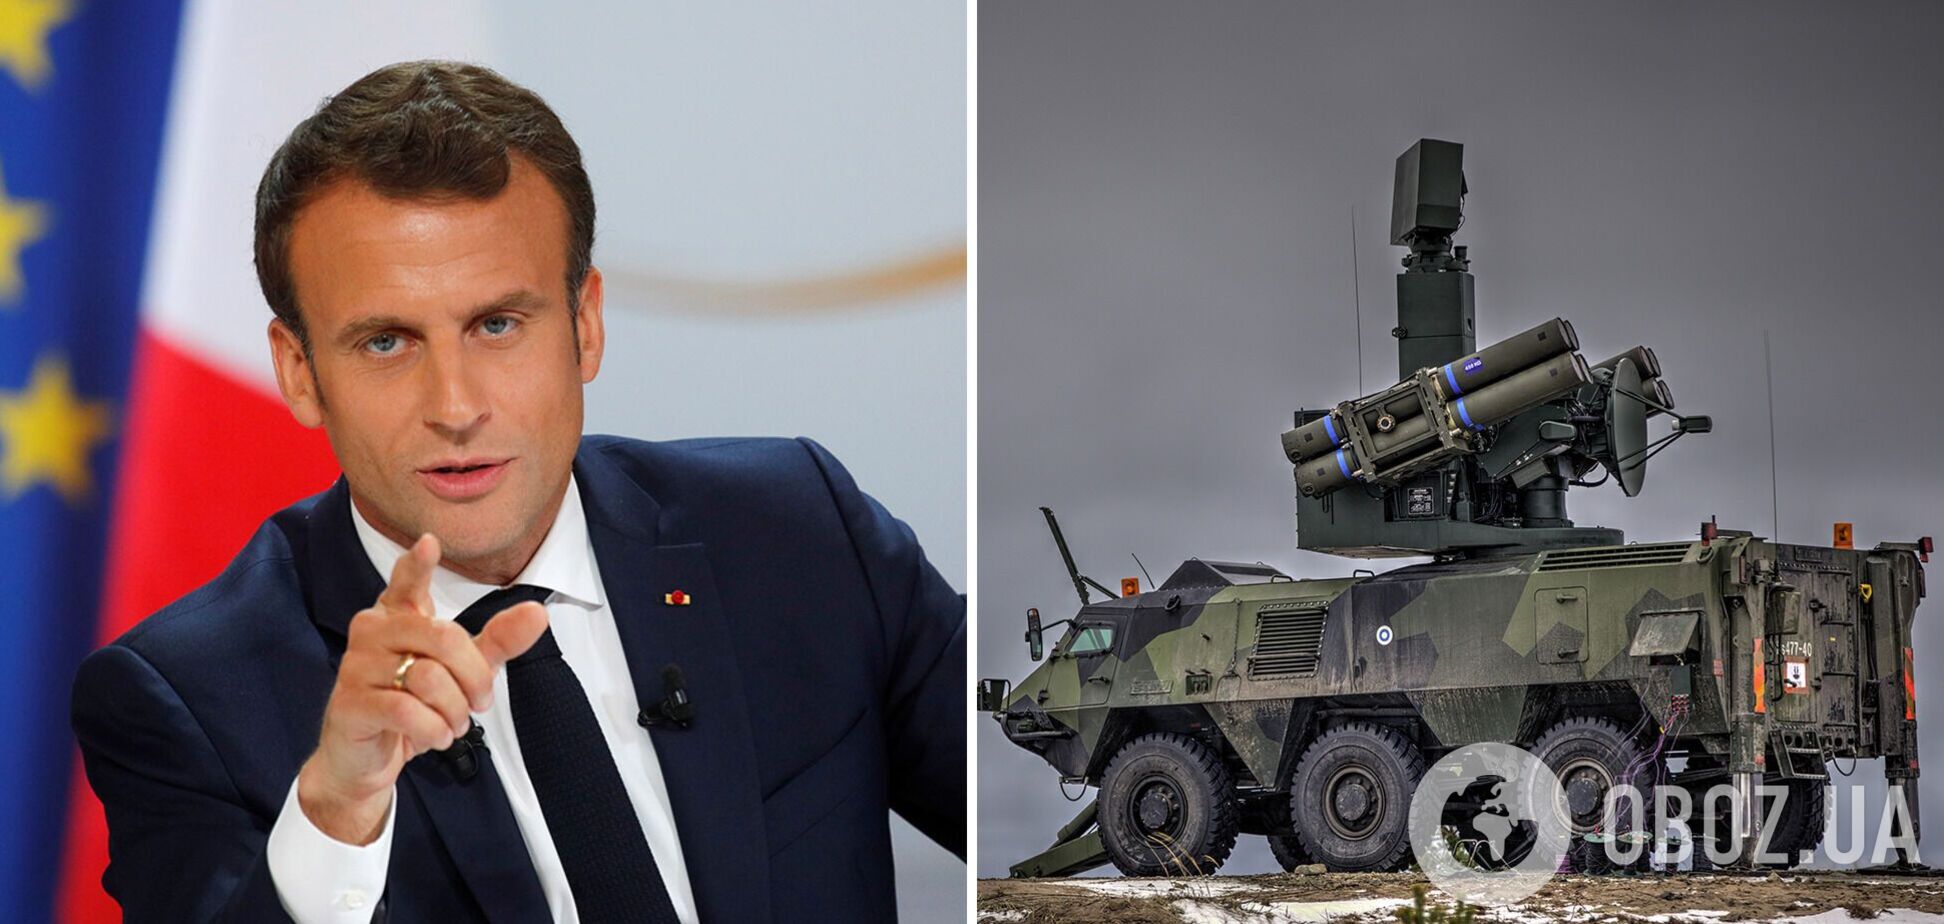 Франция передаст Украине радары и системы ПВО, – Макрон